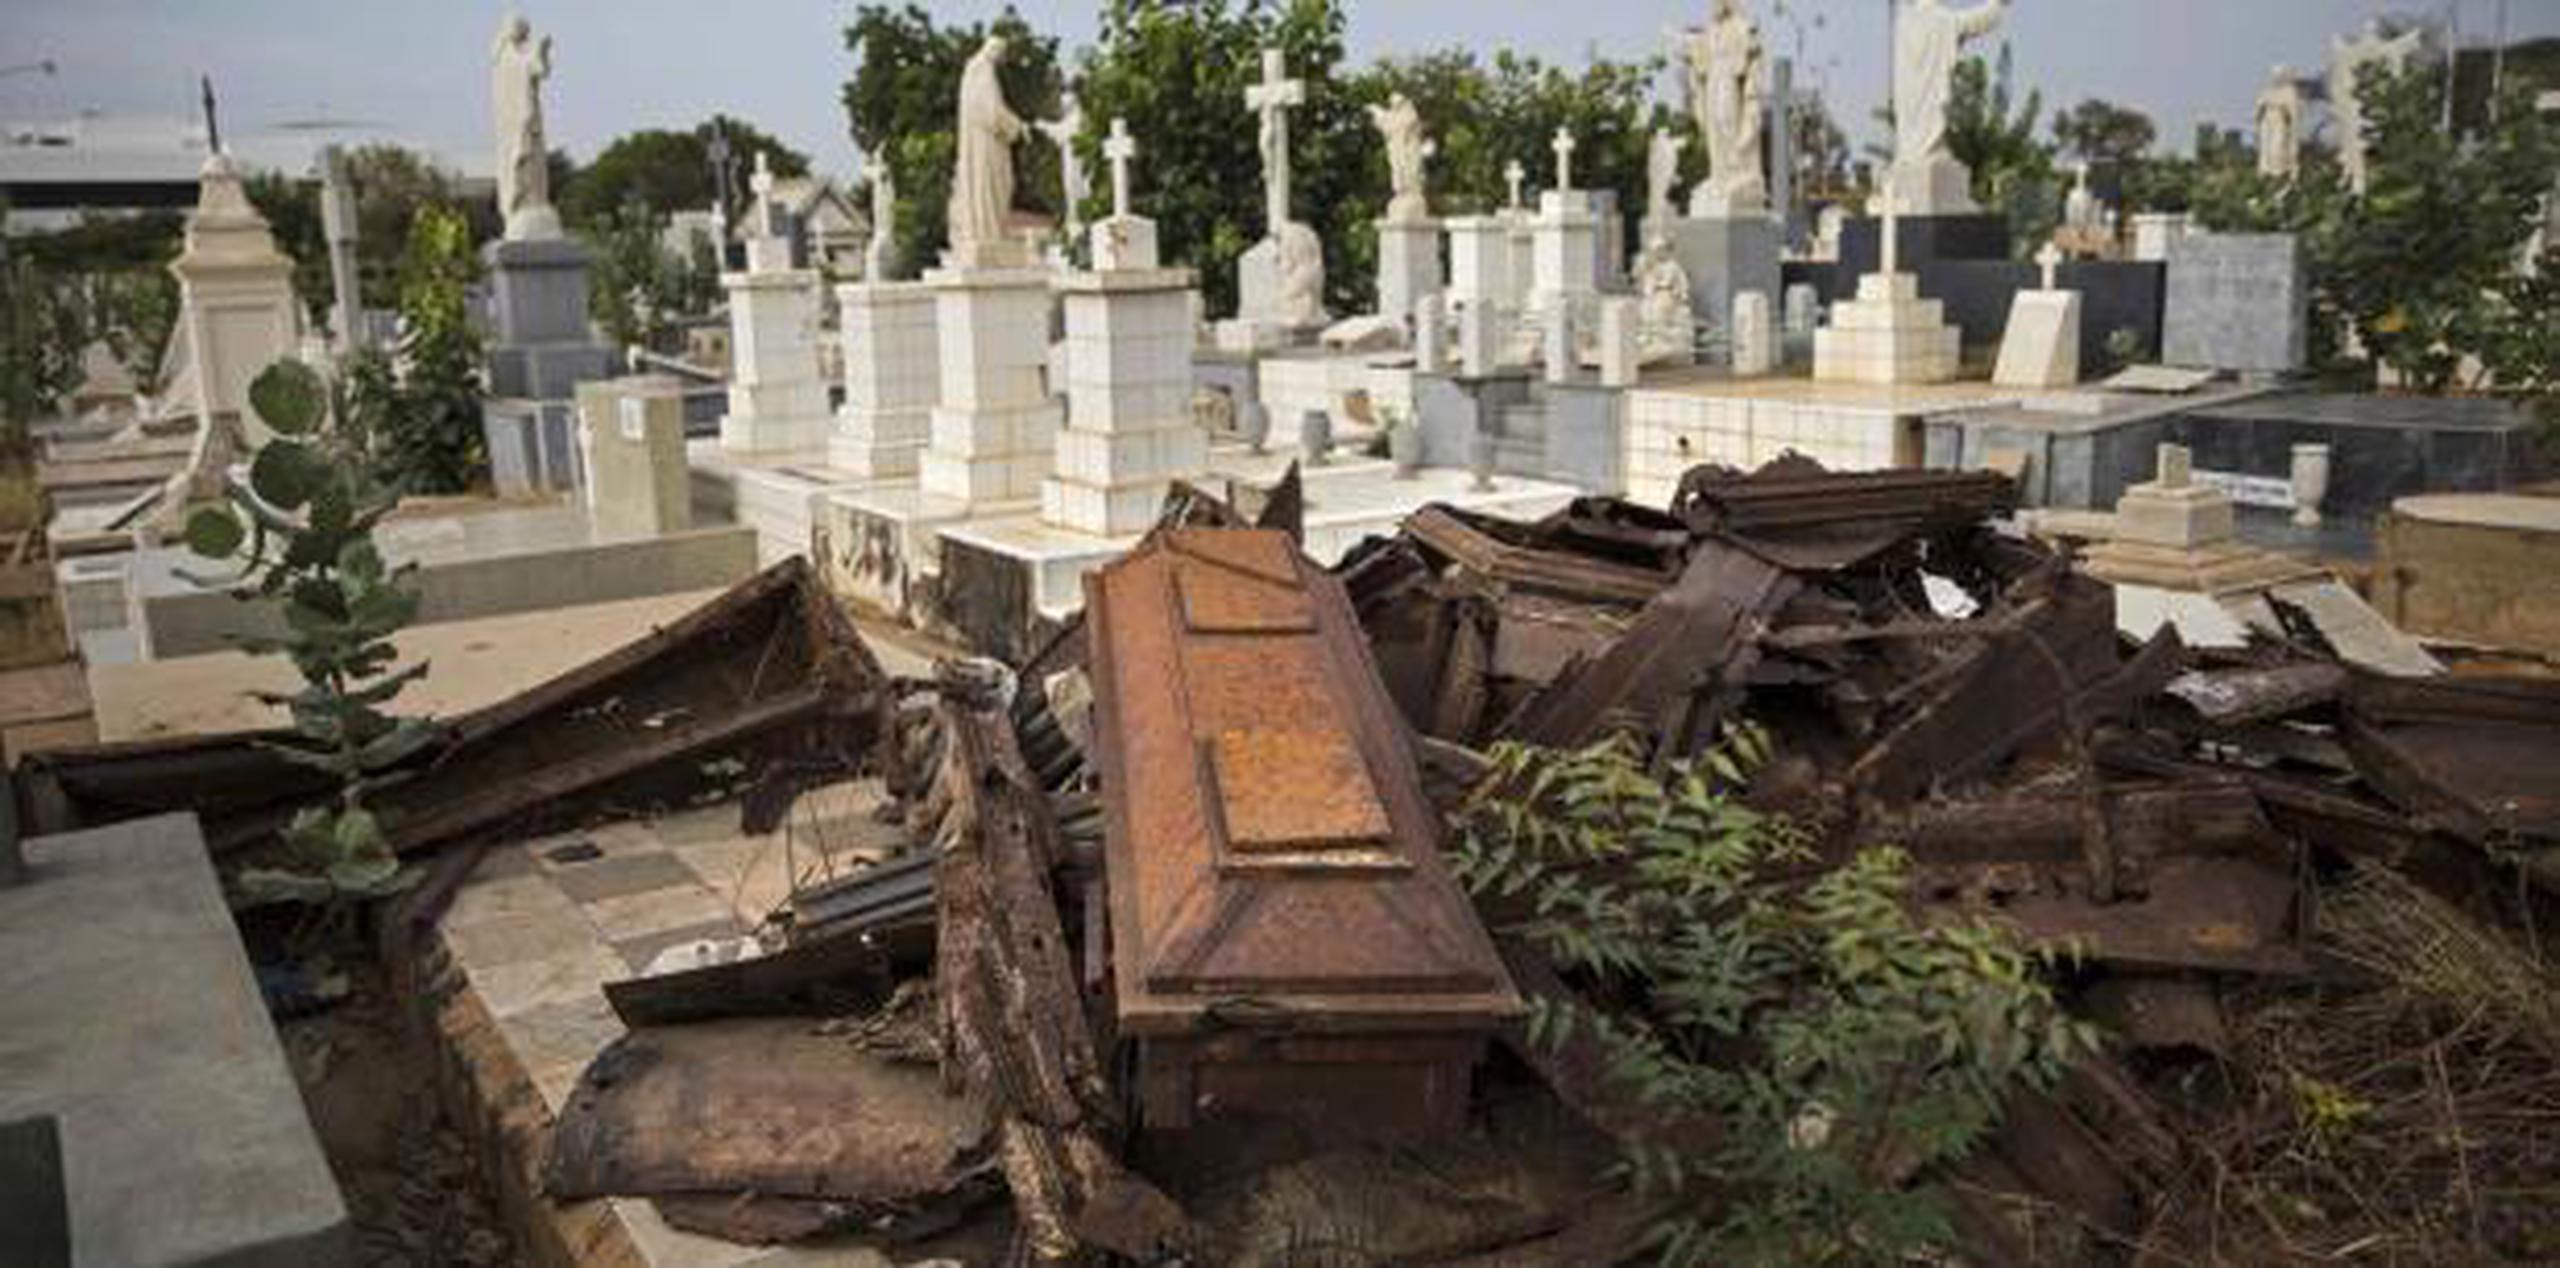 En el cementerio de El Cuadrado robaron desde decoraciones hasta artículos de los cadáveres. (AP / Rodrigo Abd)